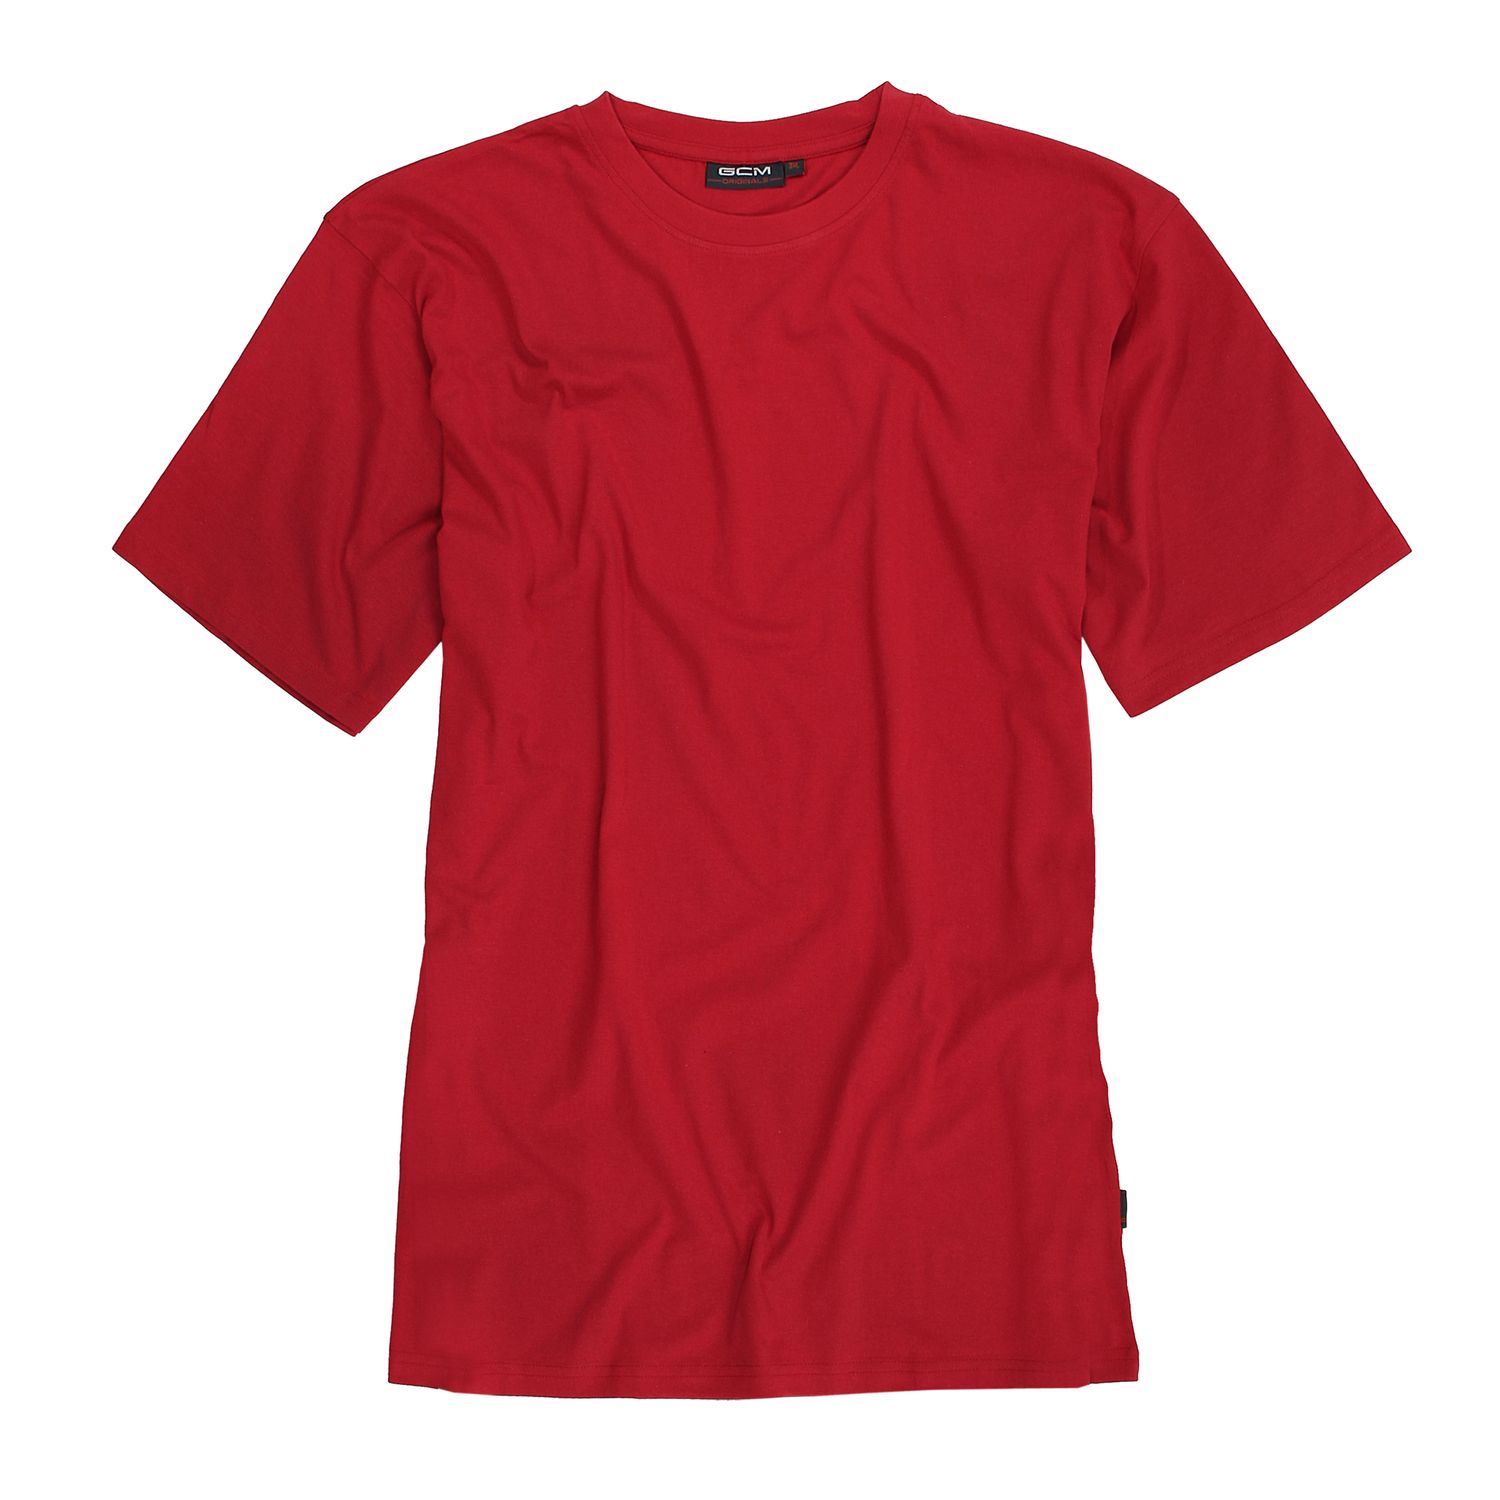 T-shirt rouge de GCM Originals grande taille jusqu'au 6XL